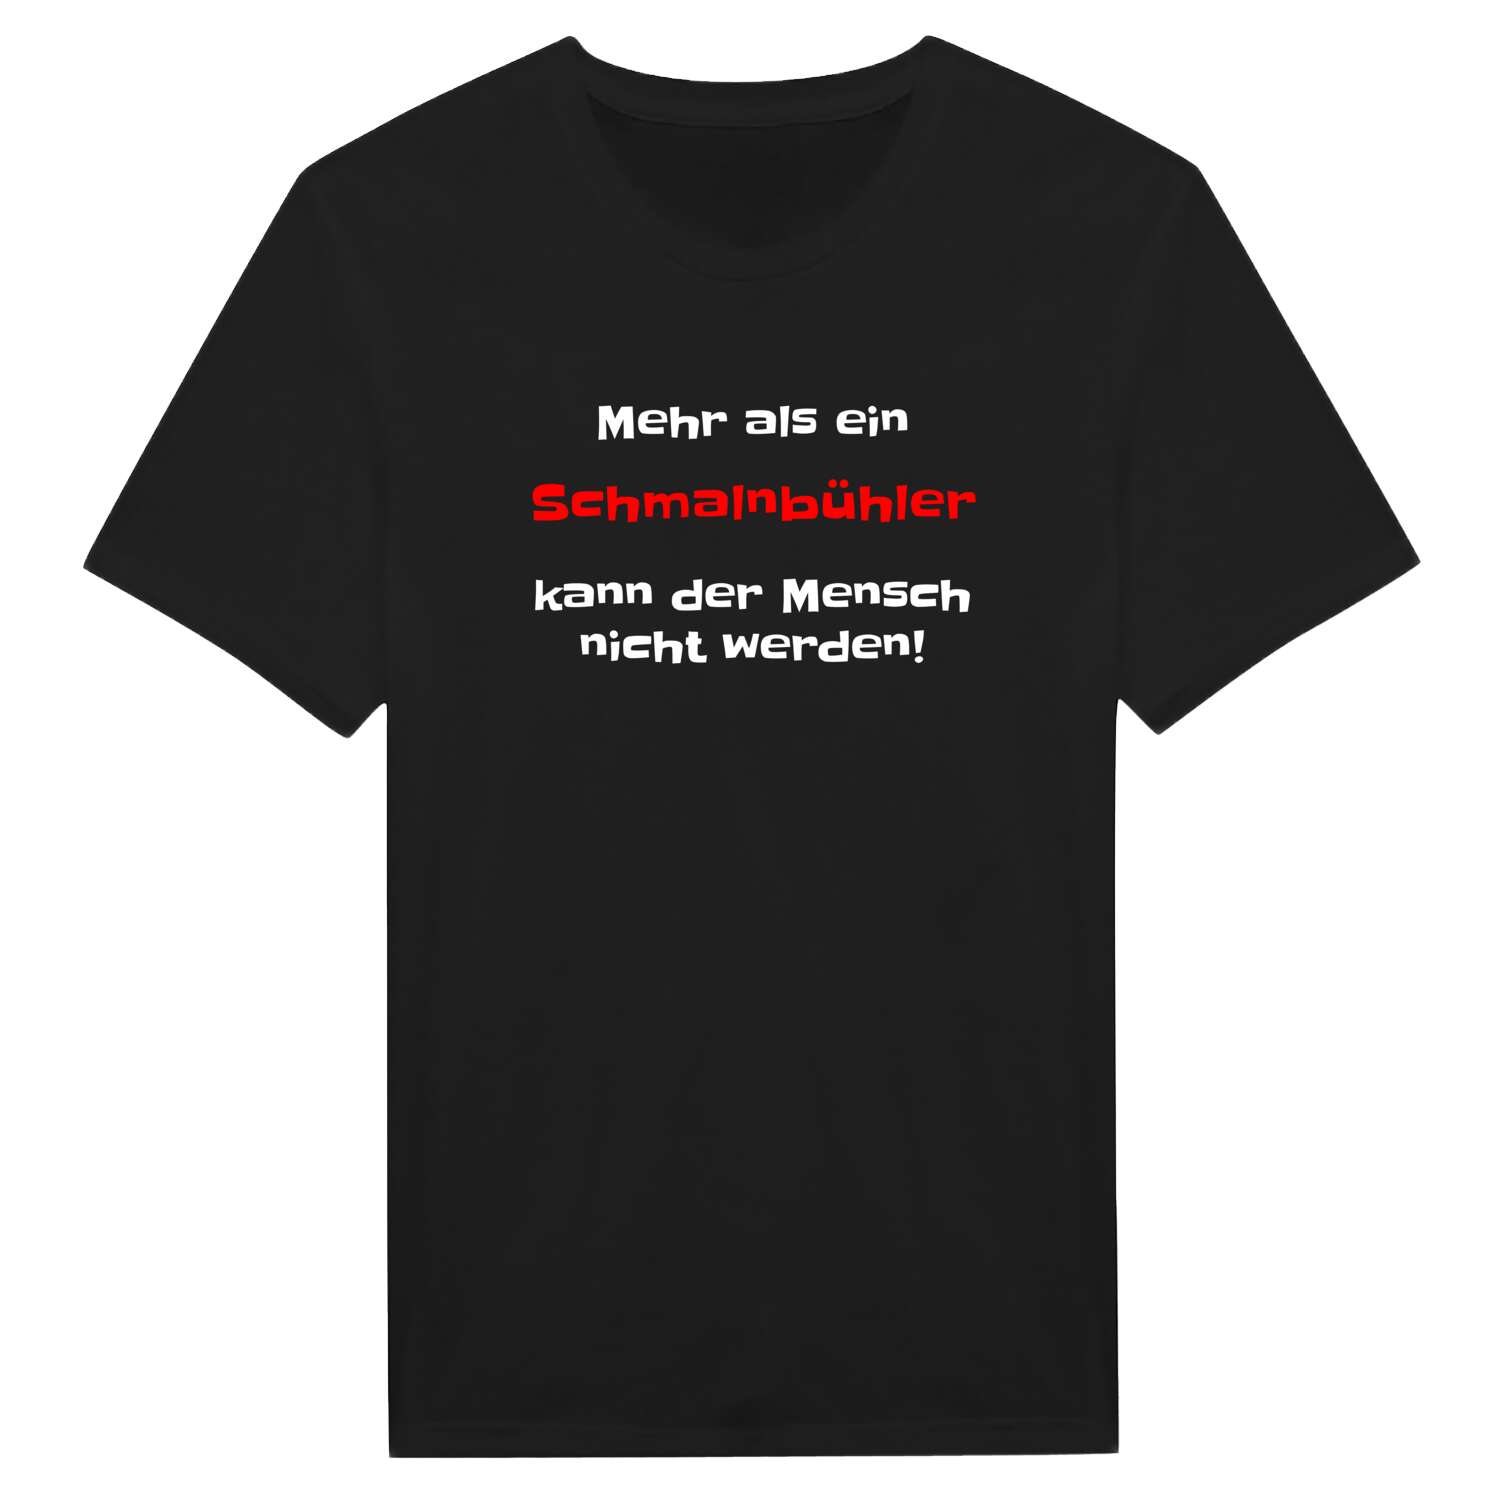 Schmalnbühl T-Shirt »Mehr als ein«